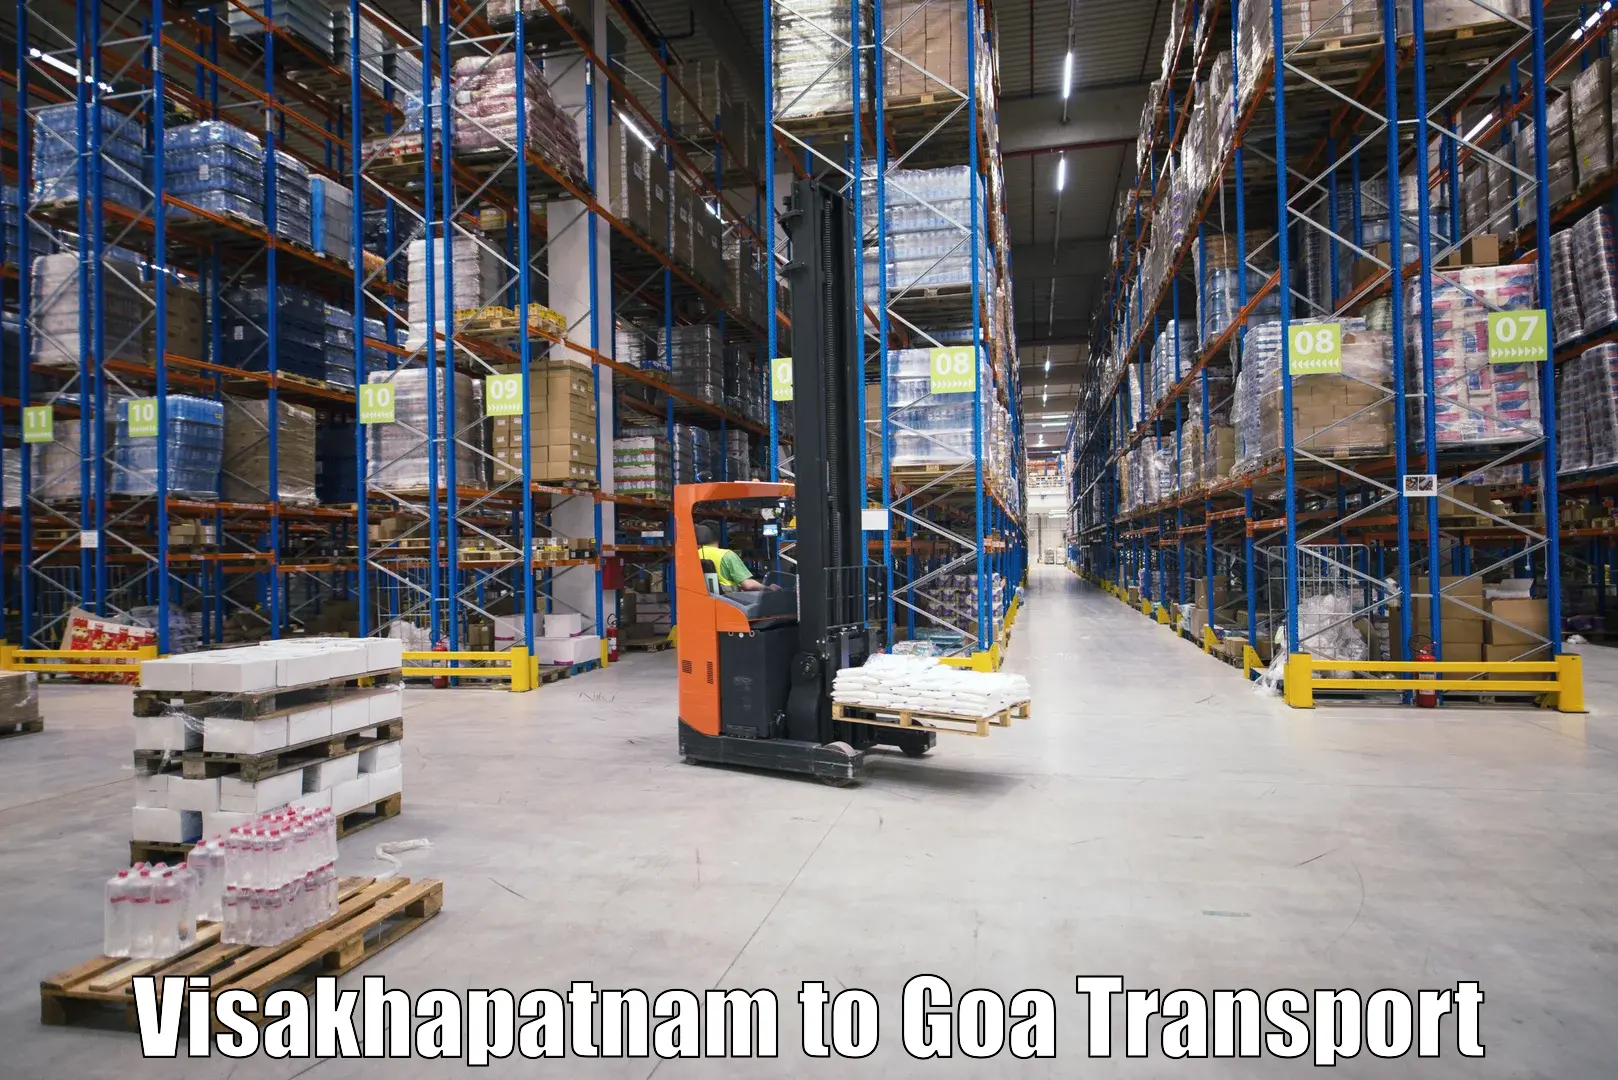 Commercial transport service Visakhapatnam to Vasco da Gama